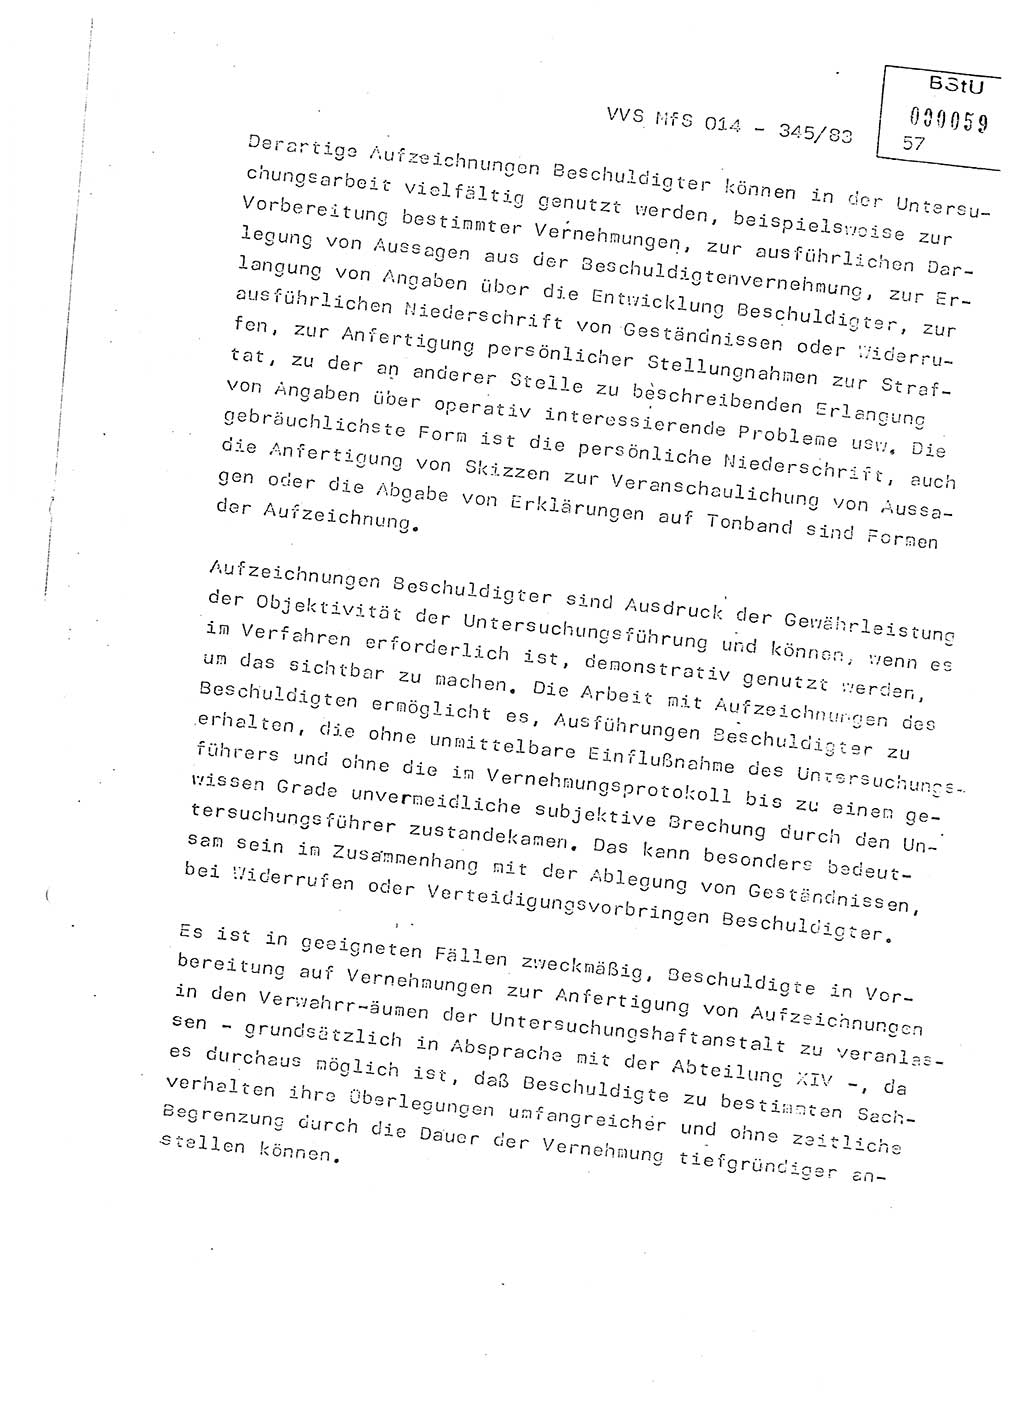 Lektion Ministerium für Staatssicherheit (MfS) [Deutsche Demokratische Republik (DDR)], Hauptabteilung (HA) Ⅸ, Vertrauliche Verschlußsache (VVS) o014-345/83, Berlin 1983, Seite 57 (Lekt. MfS DDR HA Ⅸ VVS o014-345/83 1983, S. 57)